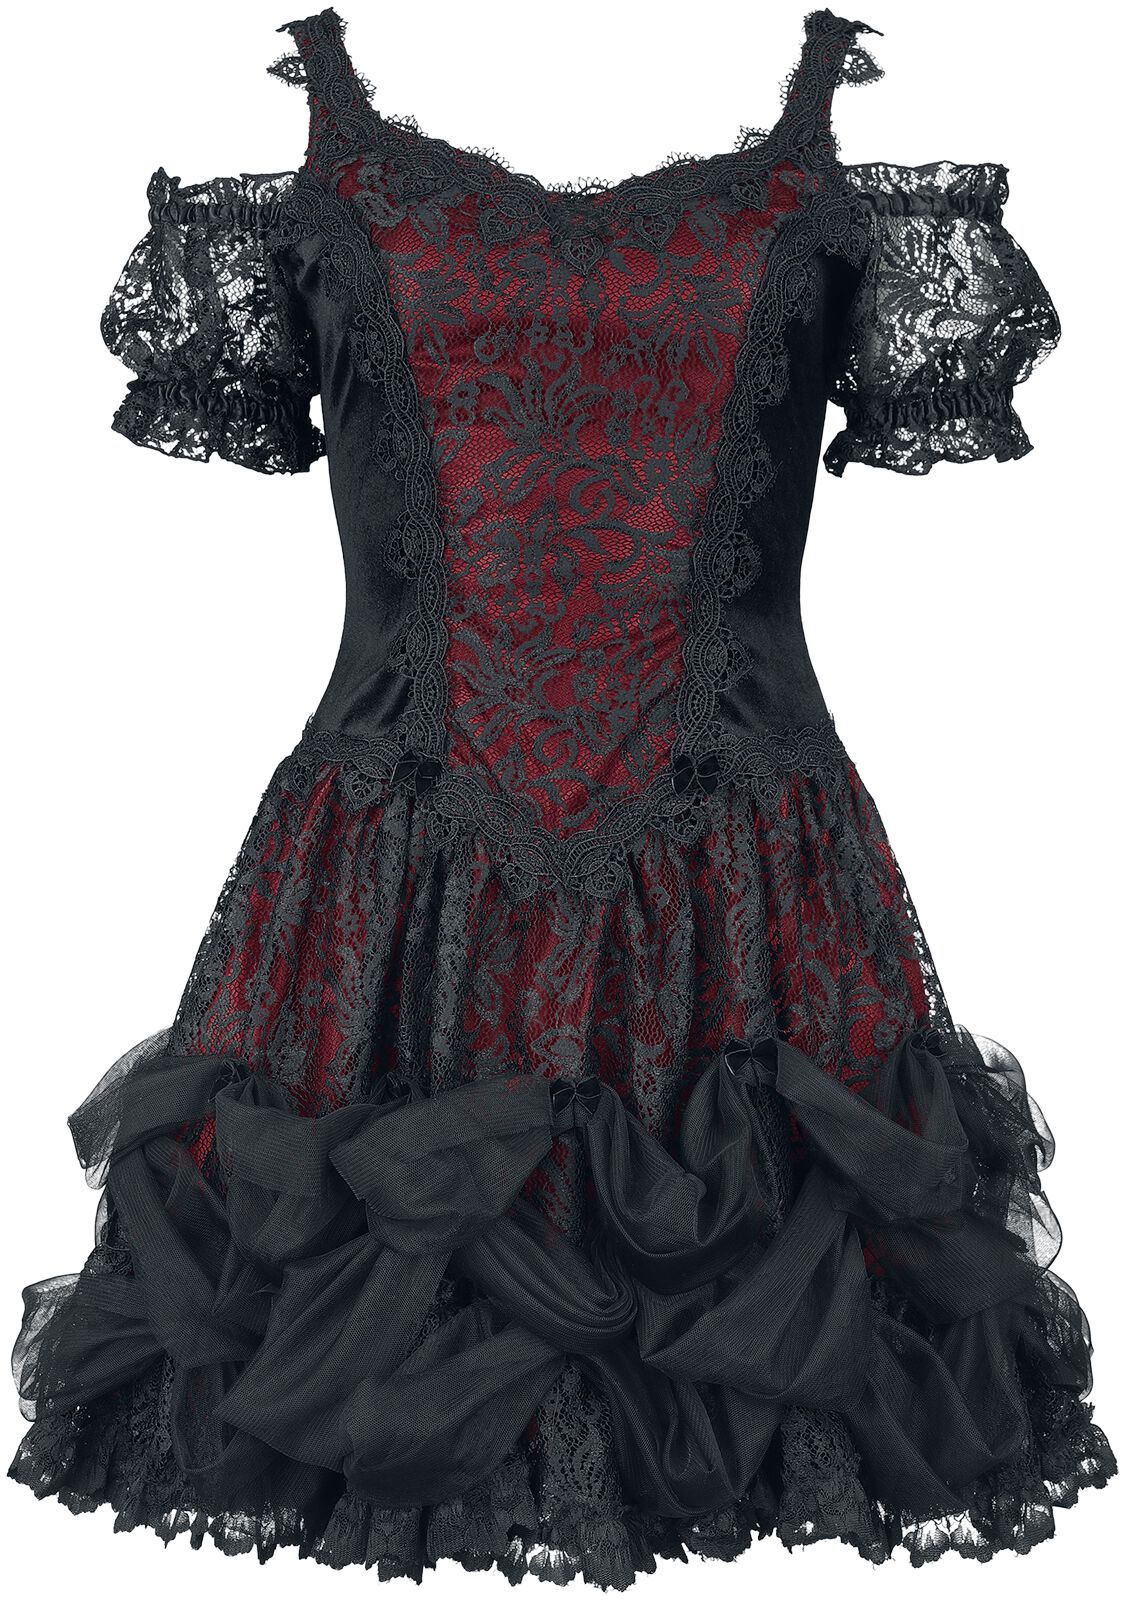 Sinister Gothic - Mittelalter Kurzes Kleid - Gothic Dress - XS bis XXL - für Damen - Größe L - schwarz/rot